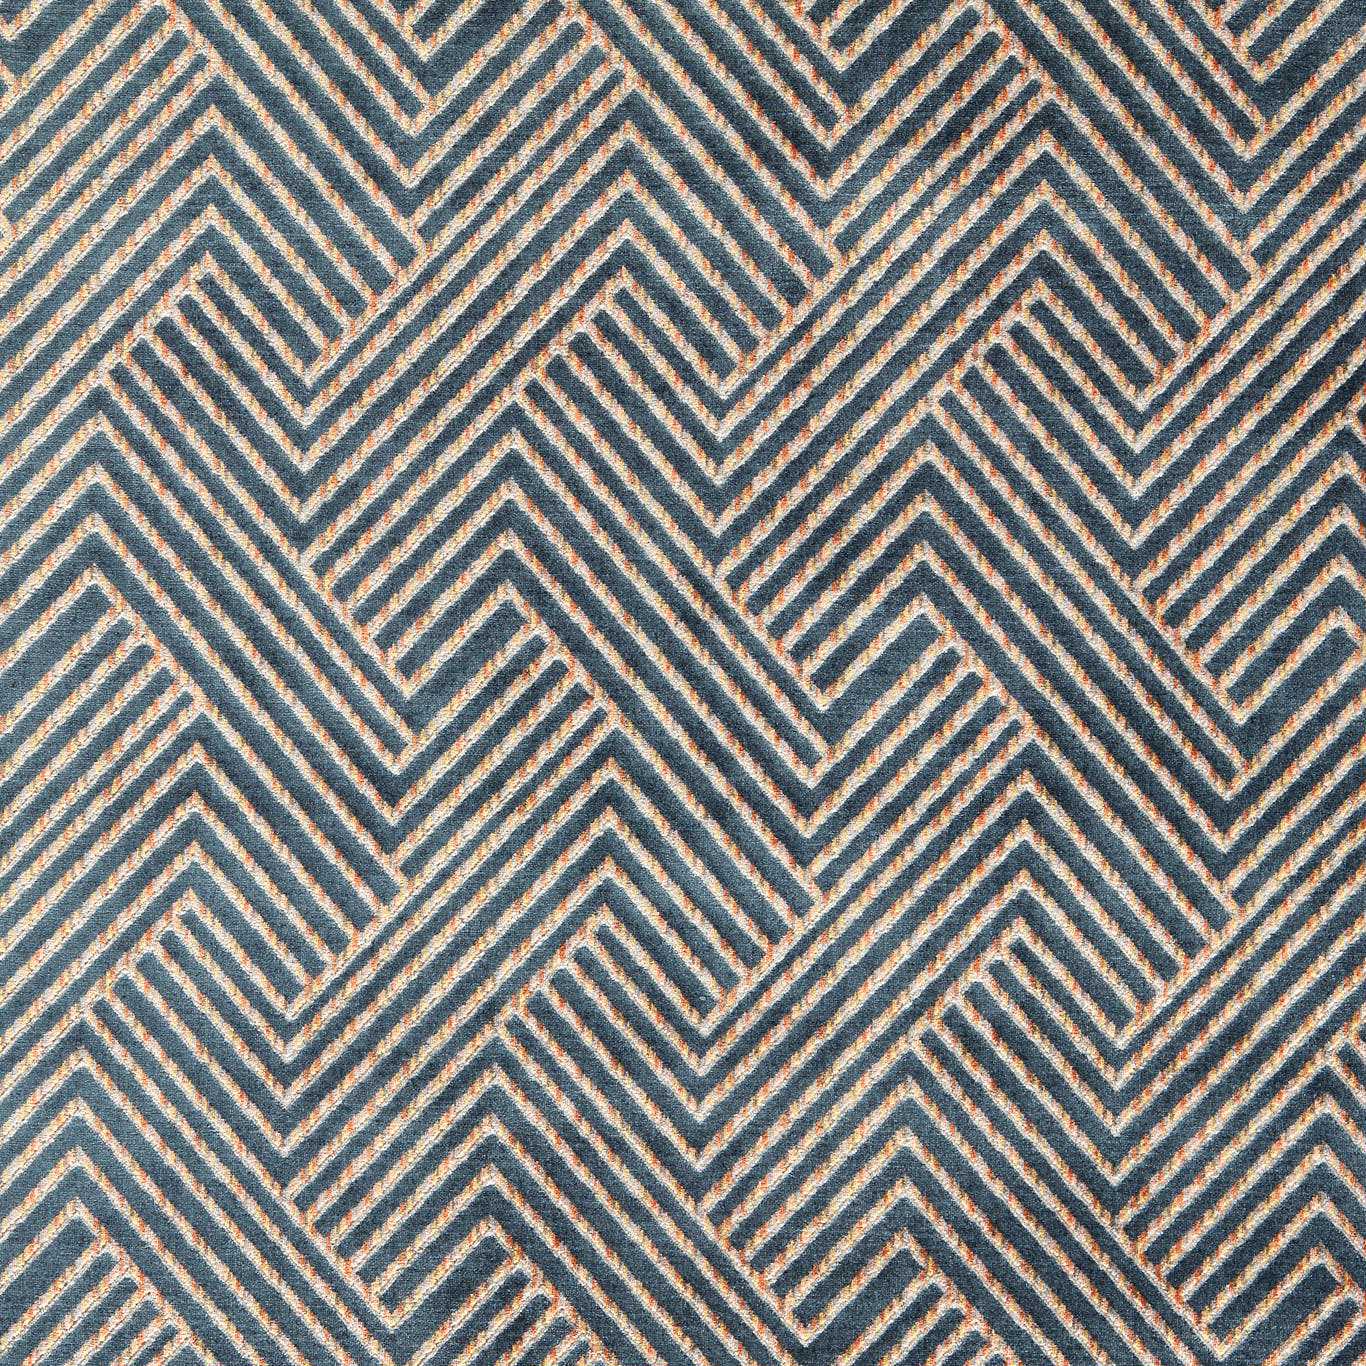 Grassetto Multi Fabric by CNC